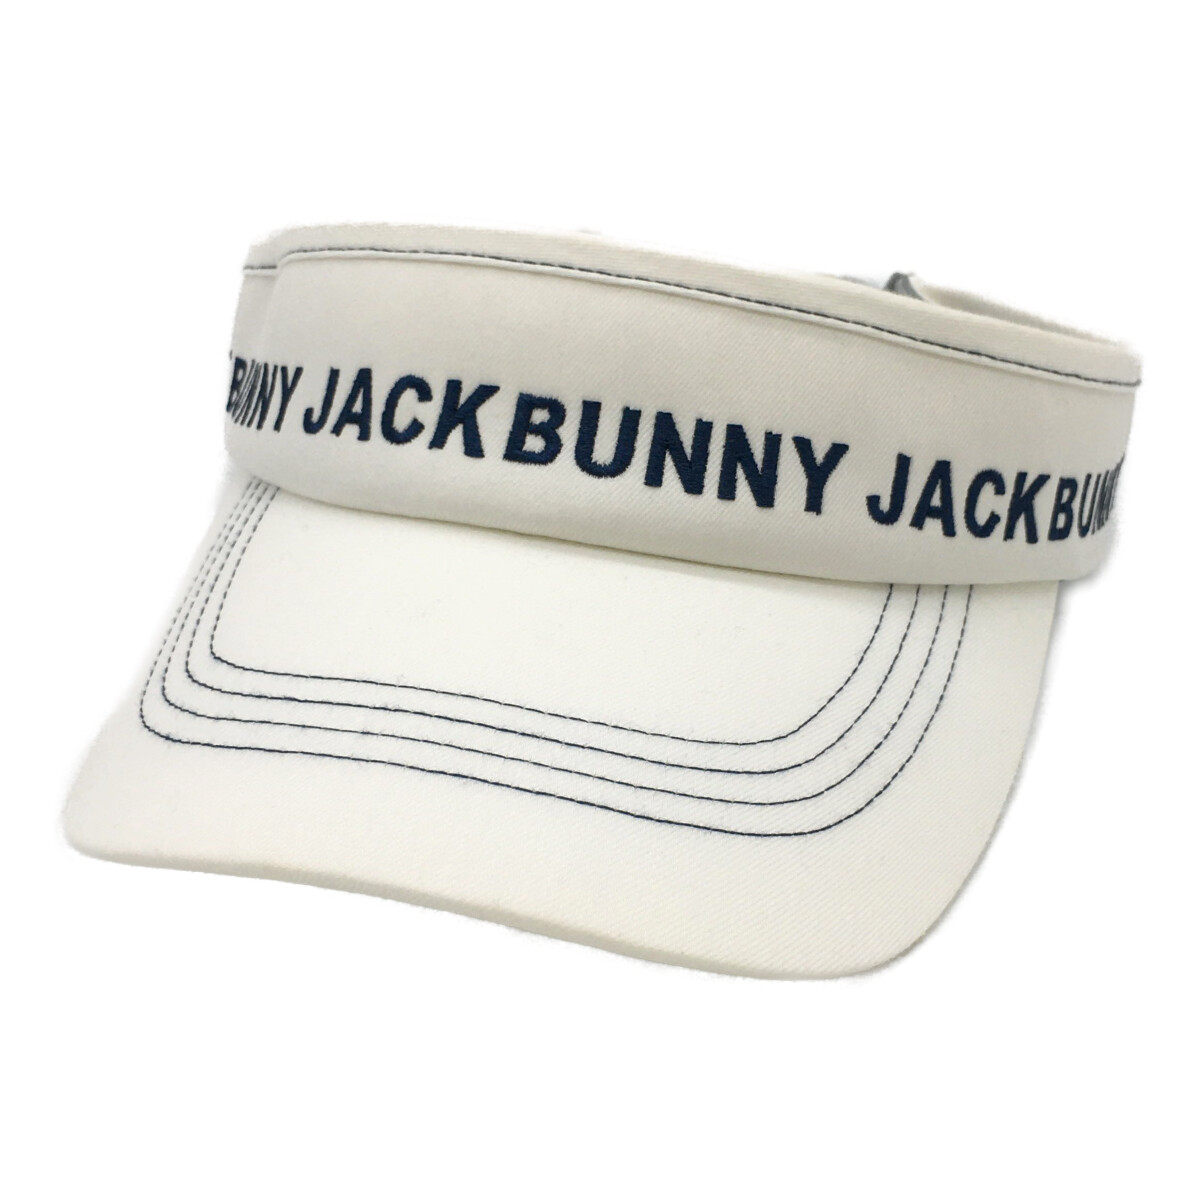 中古ゴルフウェアのメンズJACK BUNNY!!/ジャックバニーを激安価格でお探しならココゴルフ